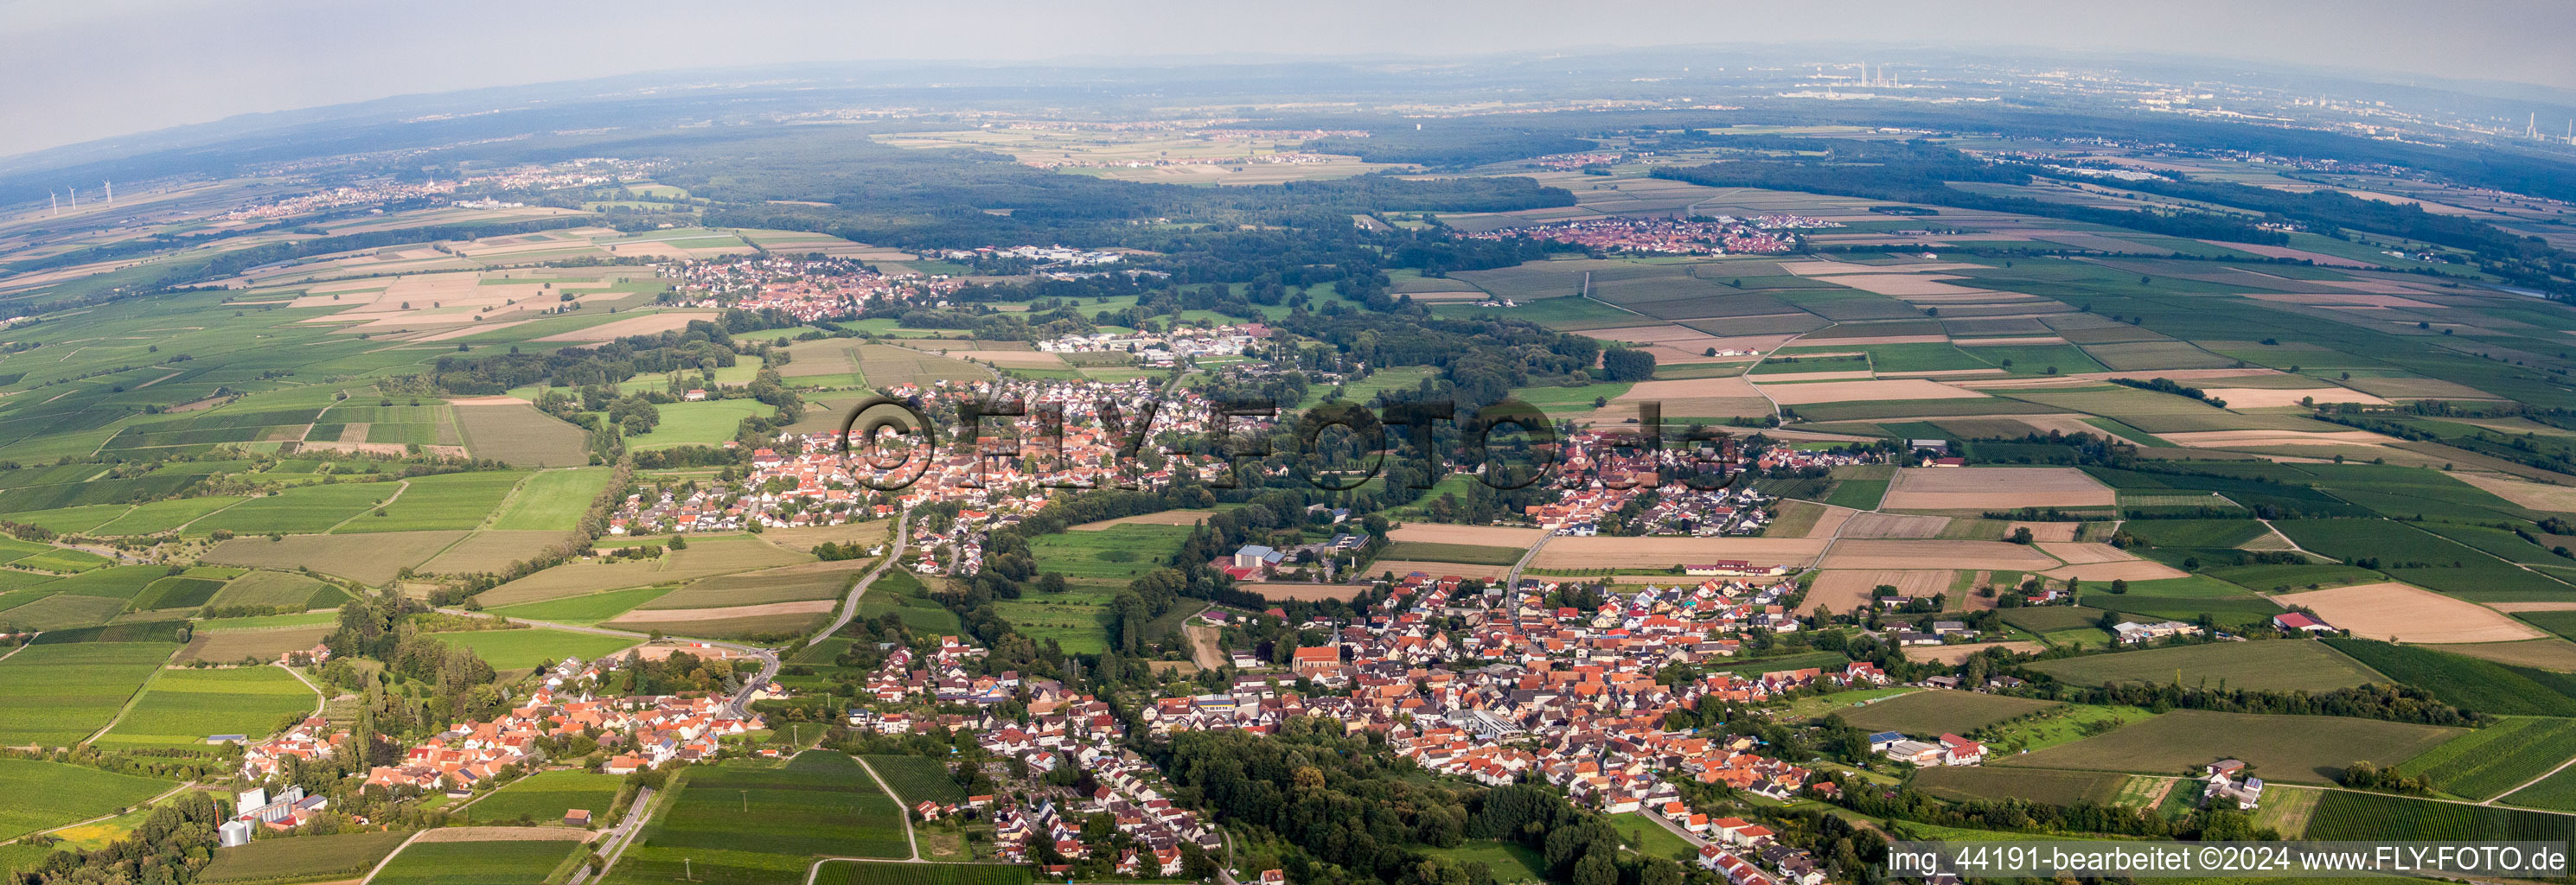 Vue aérienne de Champs agricoles et terres agricoles en perspective panoramique à Billigheim-Ingenheim dans le département Rhénanie-Palatinat, Allemagne